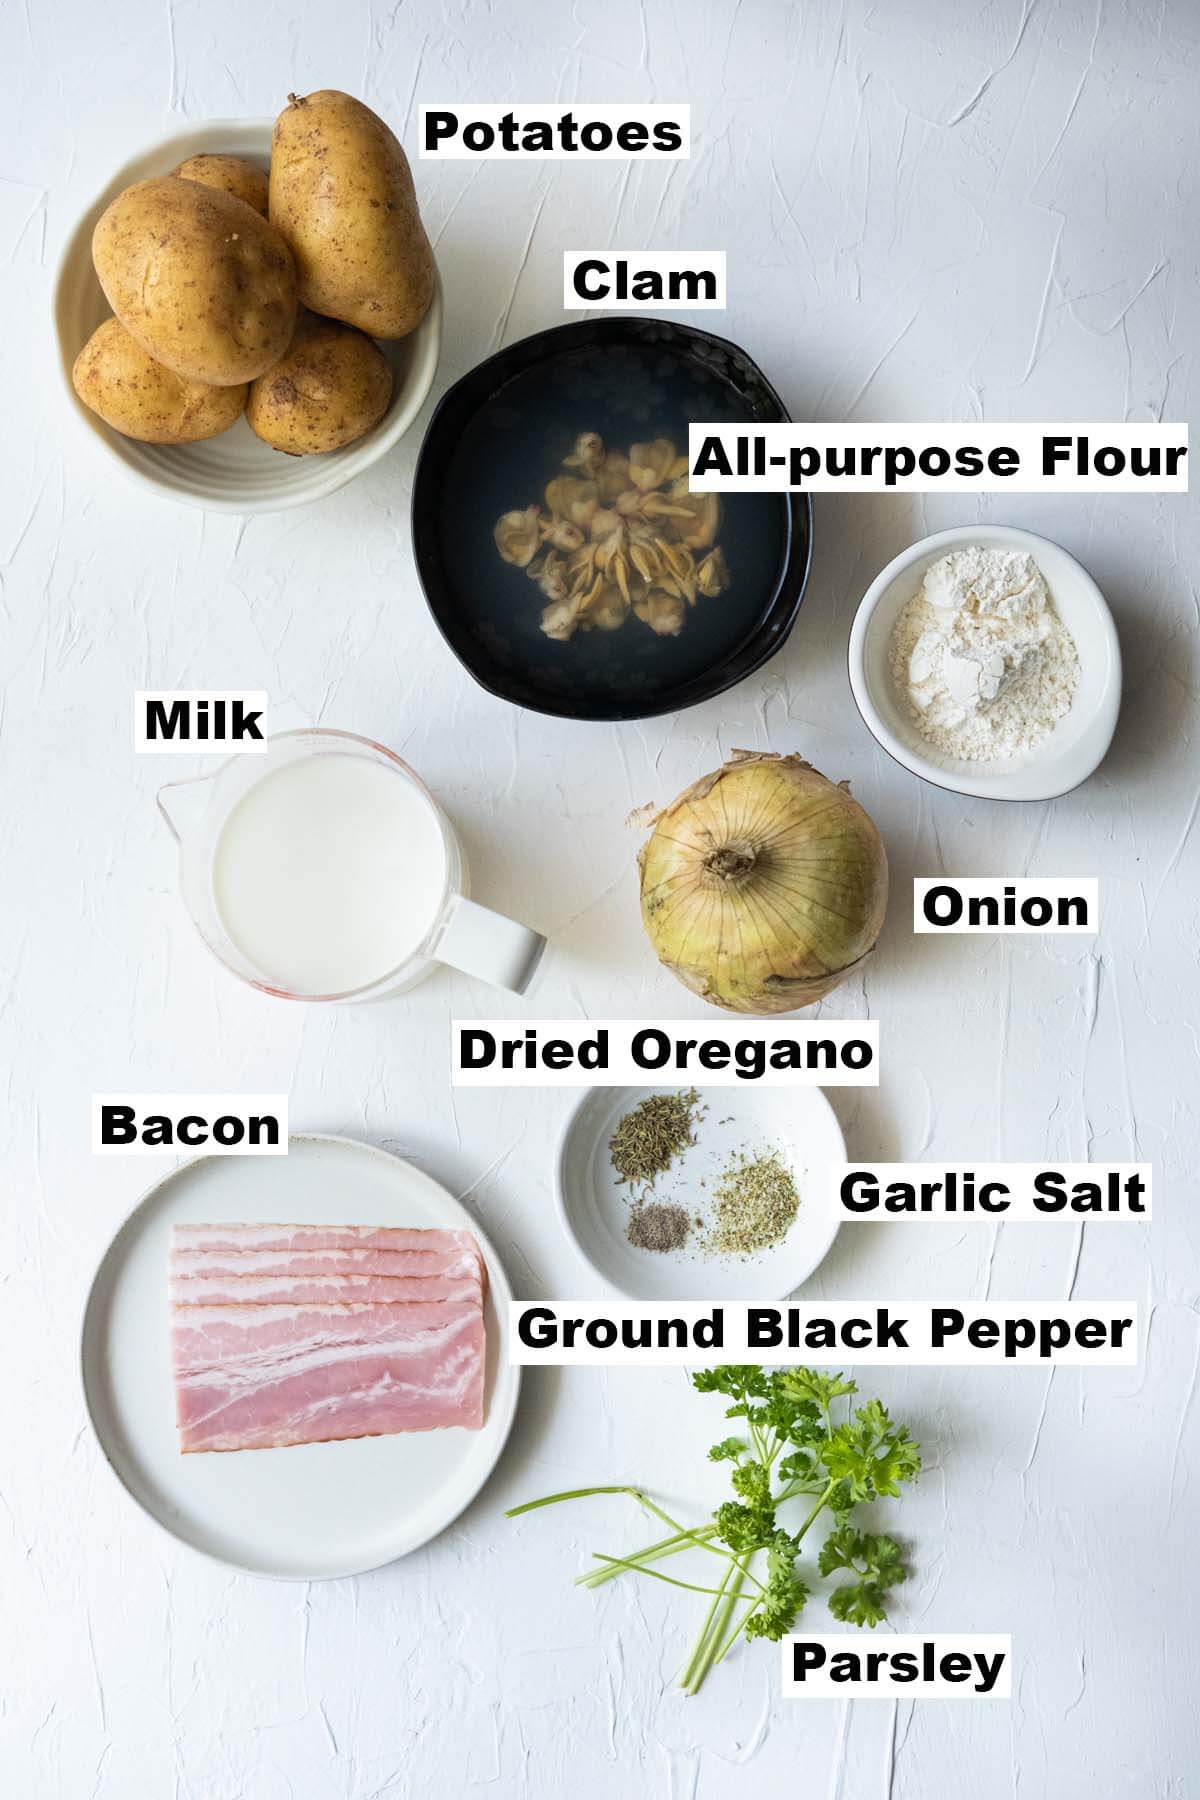 Potato clam chowder ingredients. 